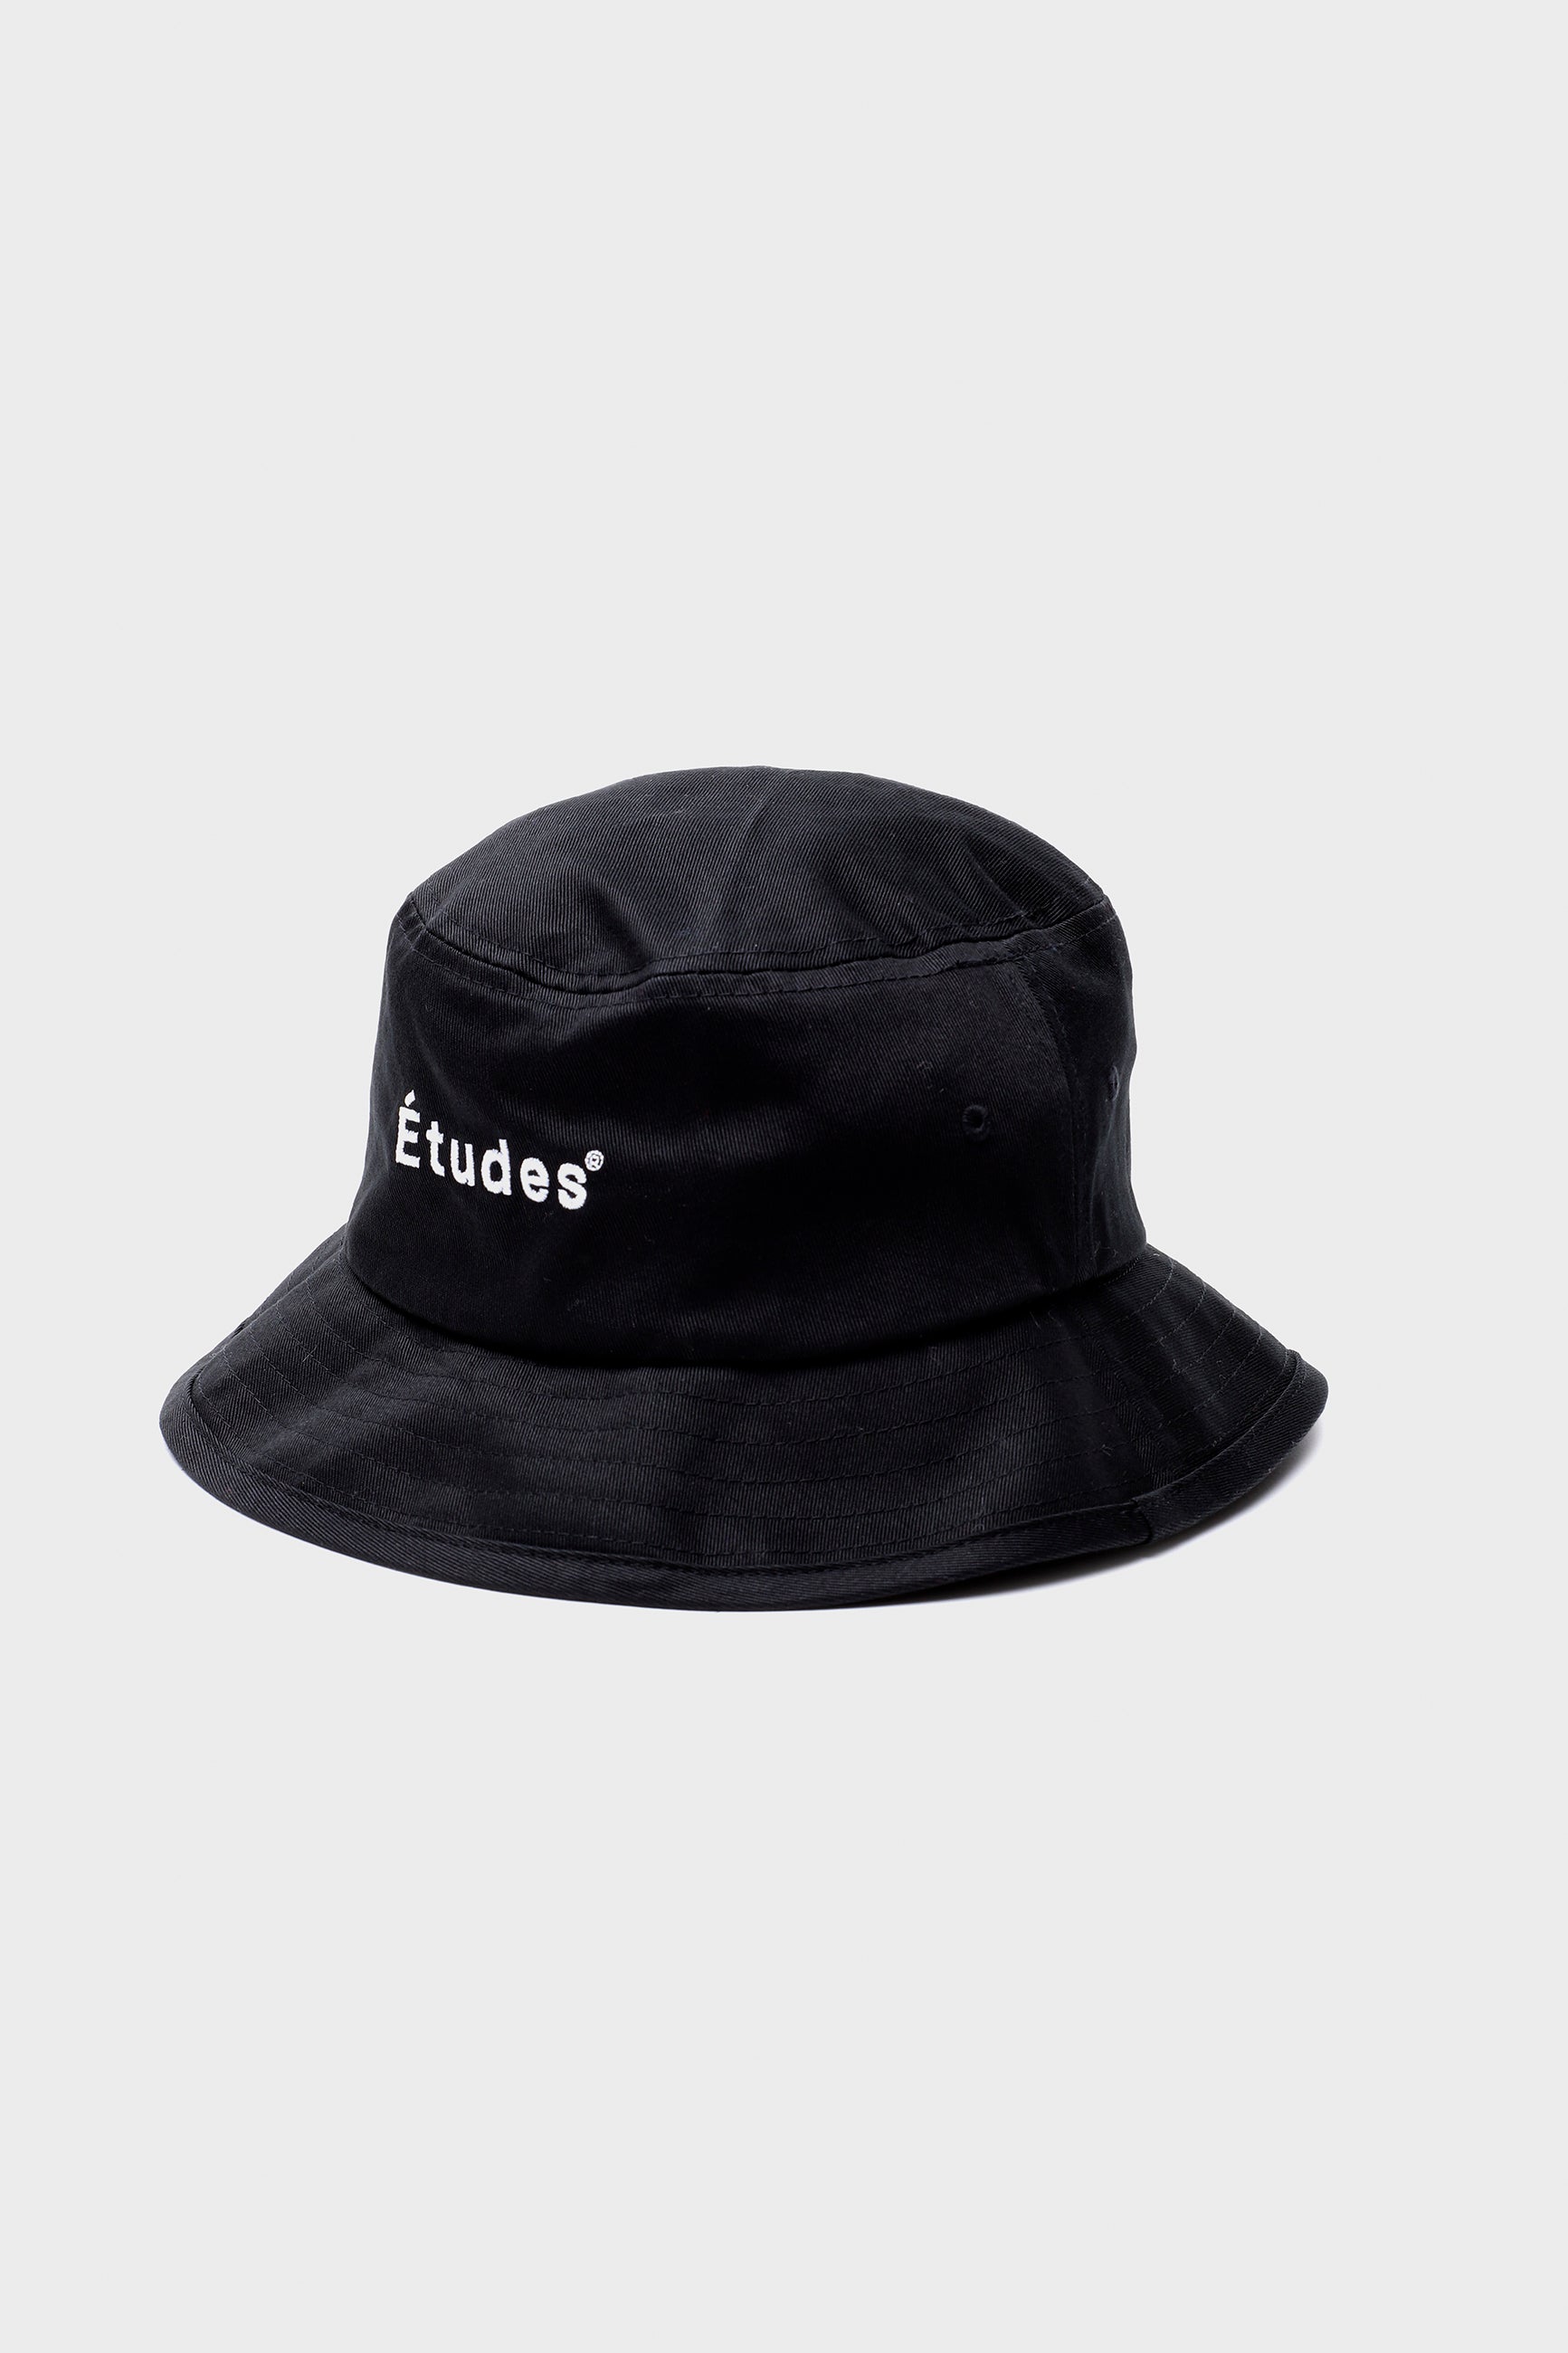 Études TRAINING HAT ETUDES BLACK hat 1